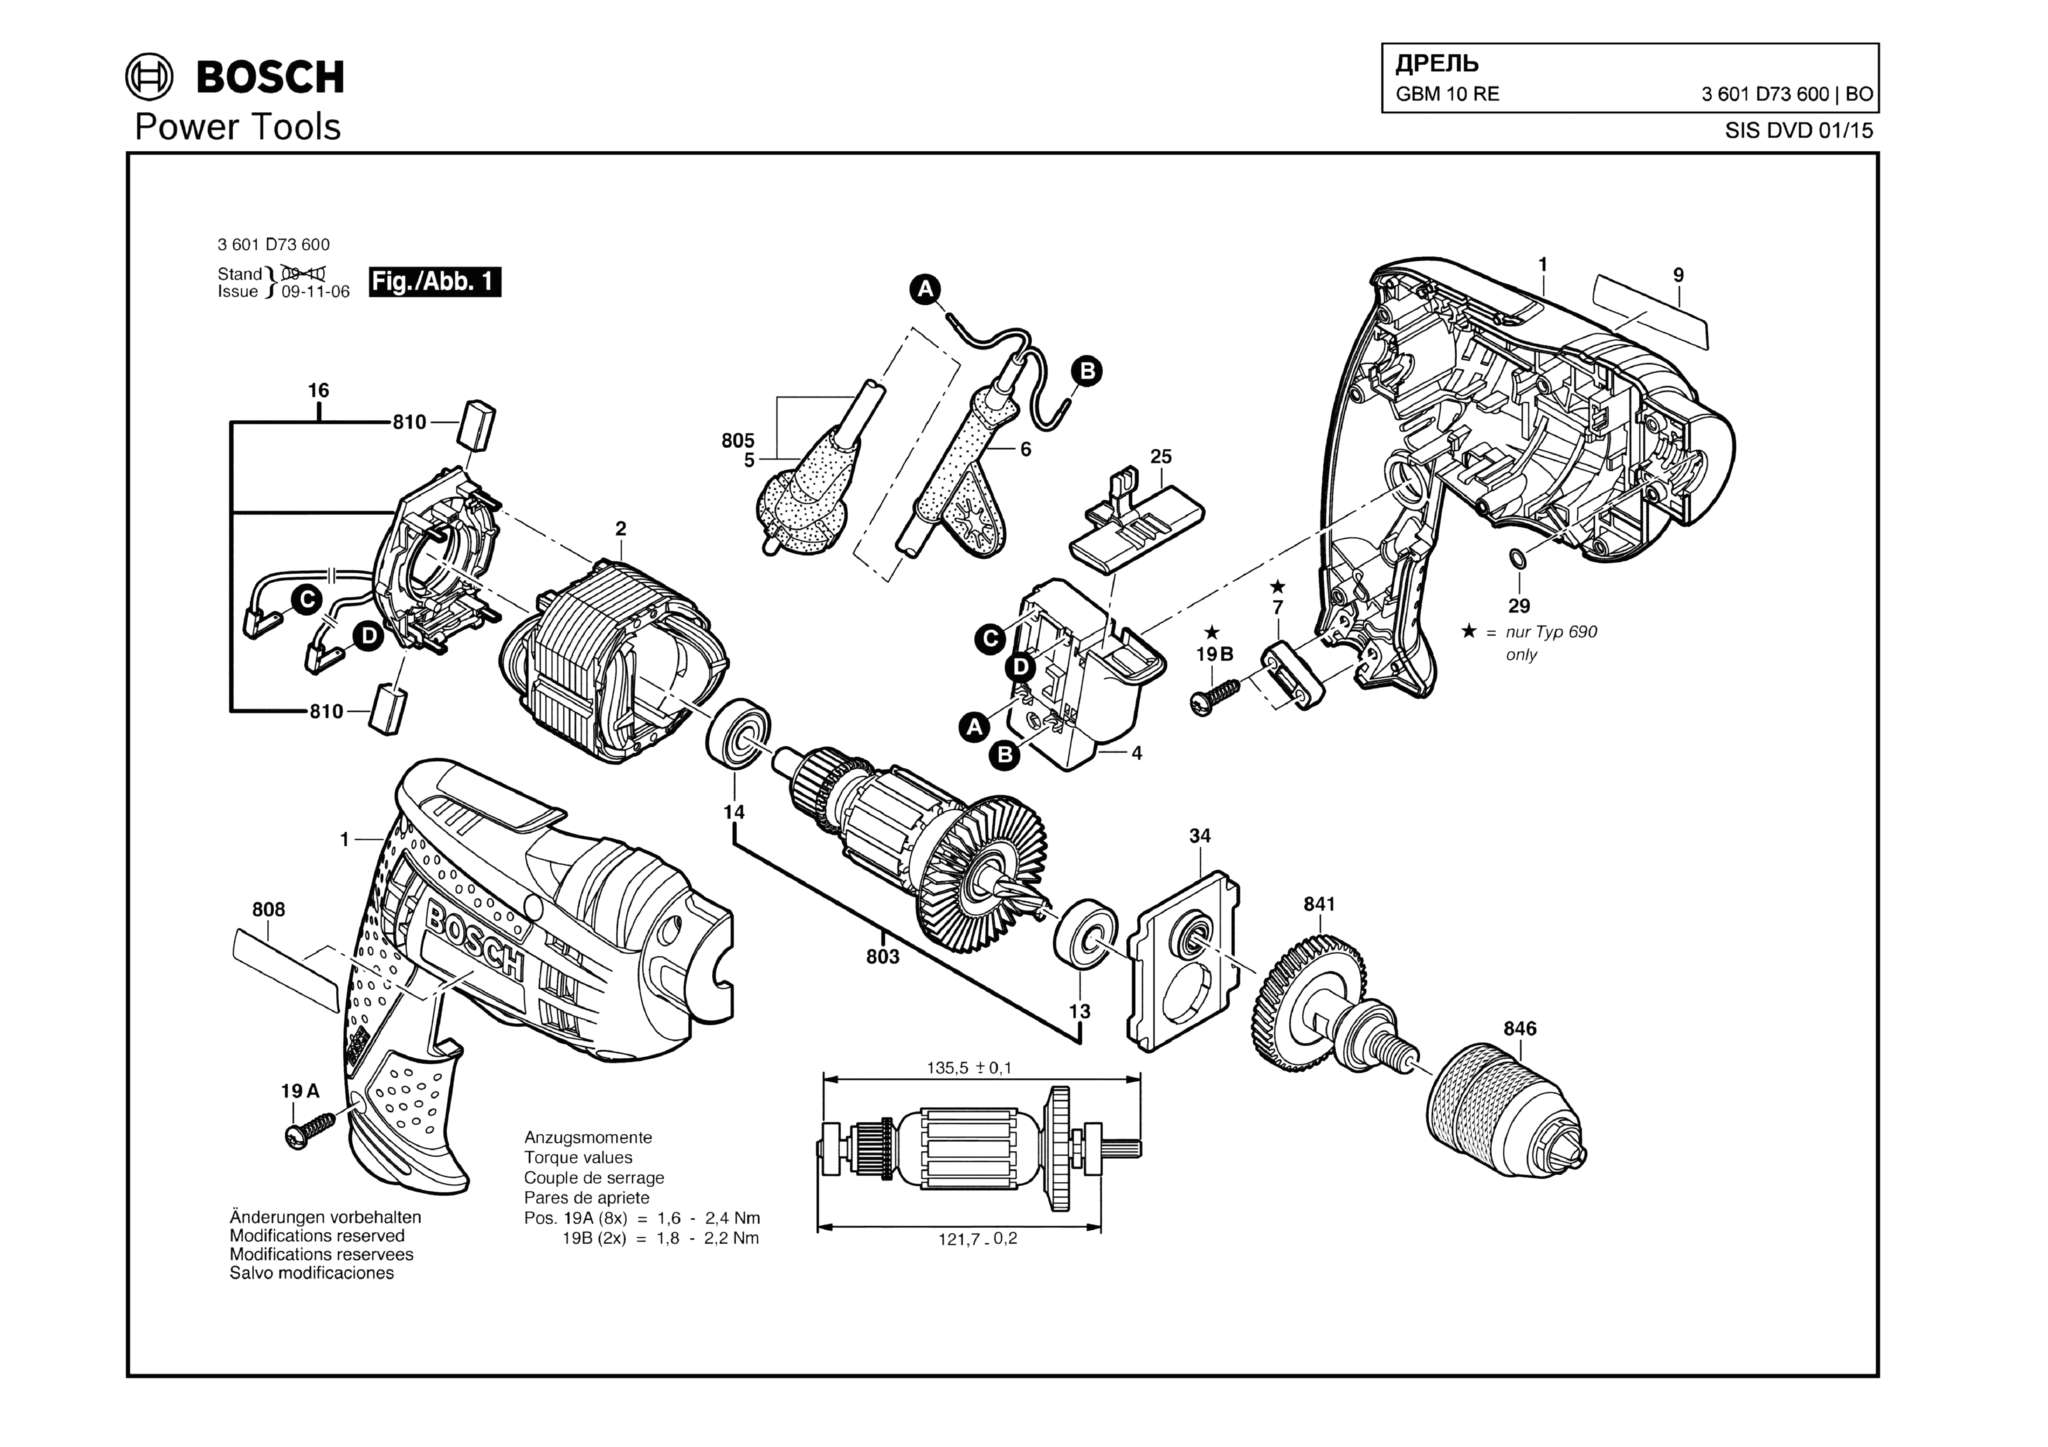 Запчасти, схема и деталировка Bosch GBM 10 RE (ТИП 3601D73600)